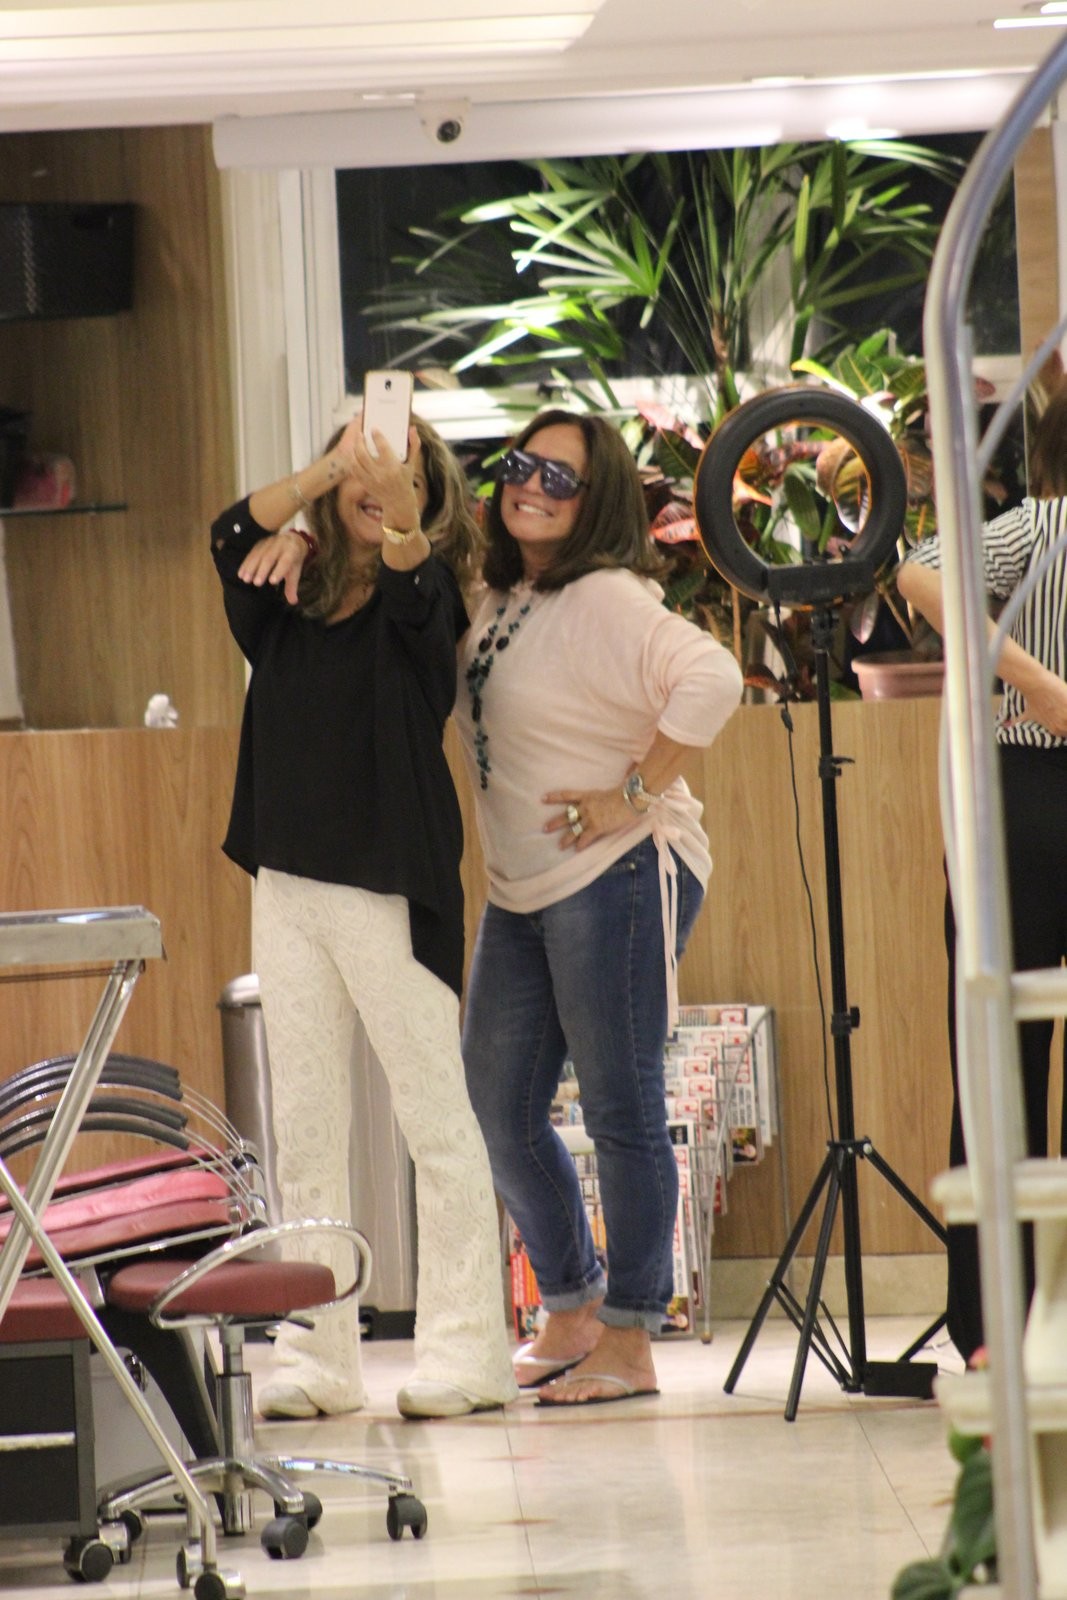 Susana Vieira tem tarde animada em shopping do Rio (Foto: Rodrigo Adão/AgNews)